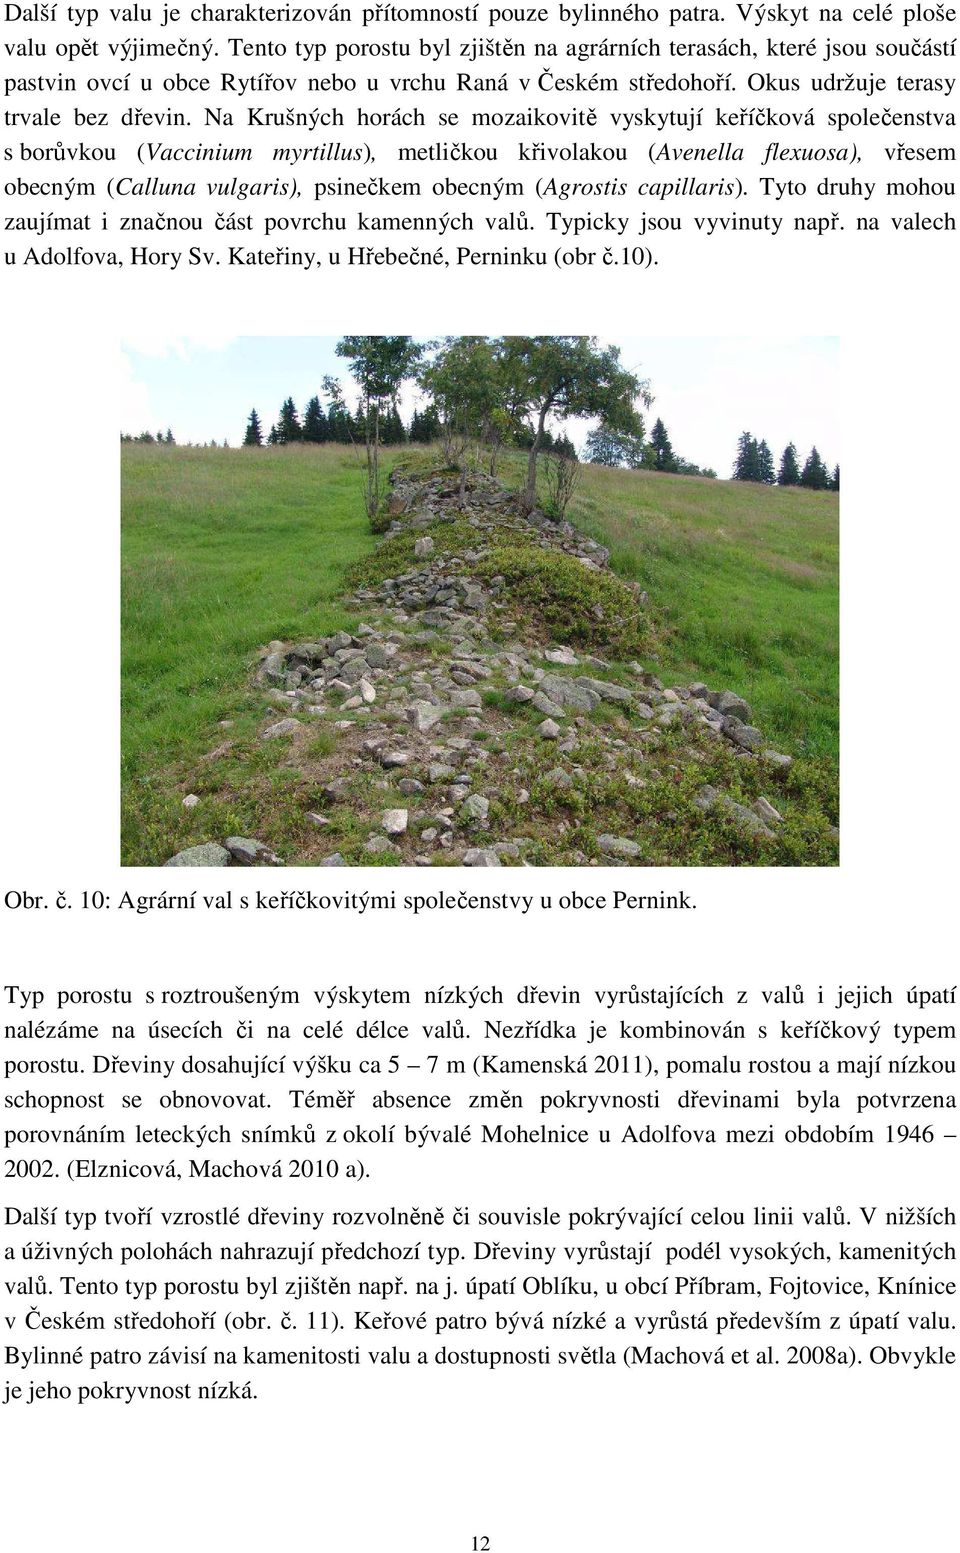 Na Krušných horách se mozaikovitě vyskytují keříčková společenstva s borůvkou (Vaccinium myrtillus), metličkou křivolakou (Avenella flexuosa), vřesem obecným (Calluna vulgaris), psinečkem obecným